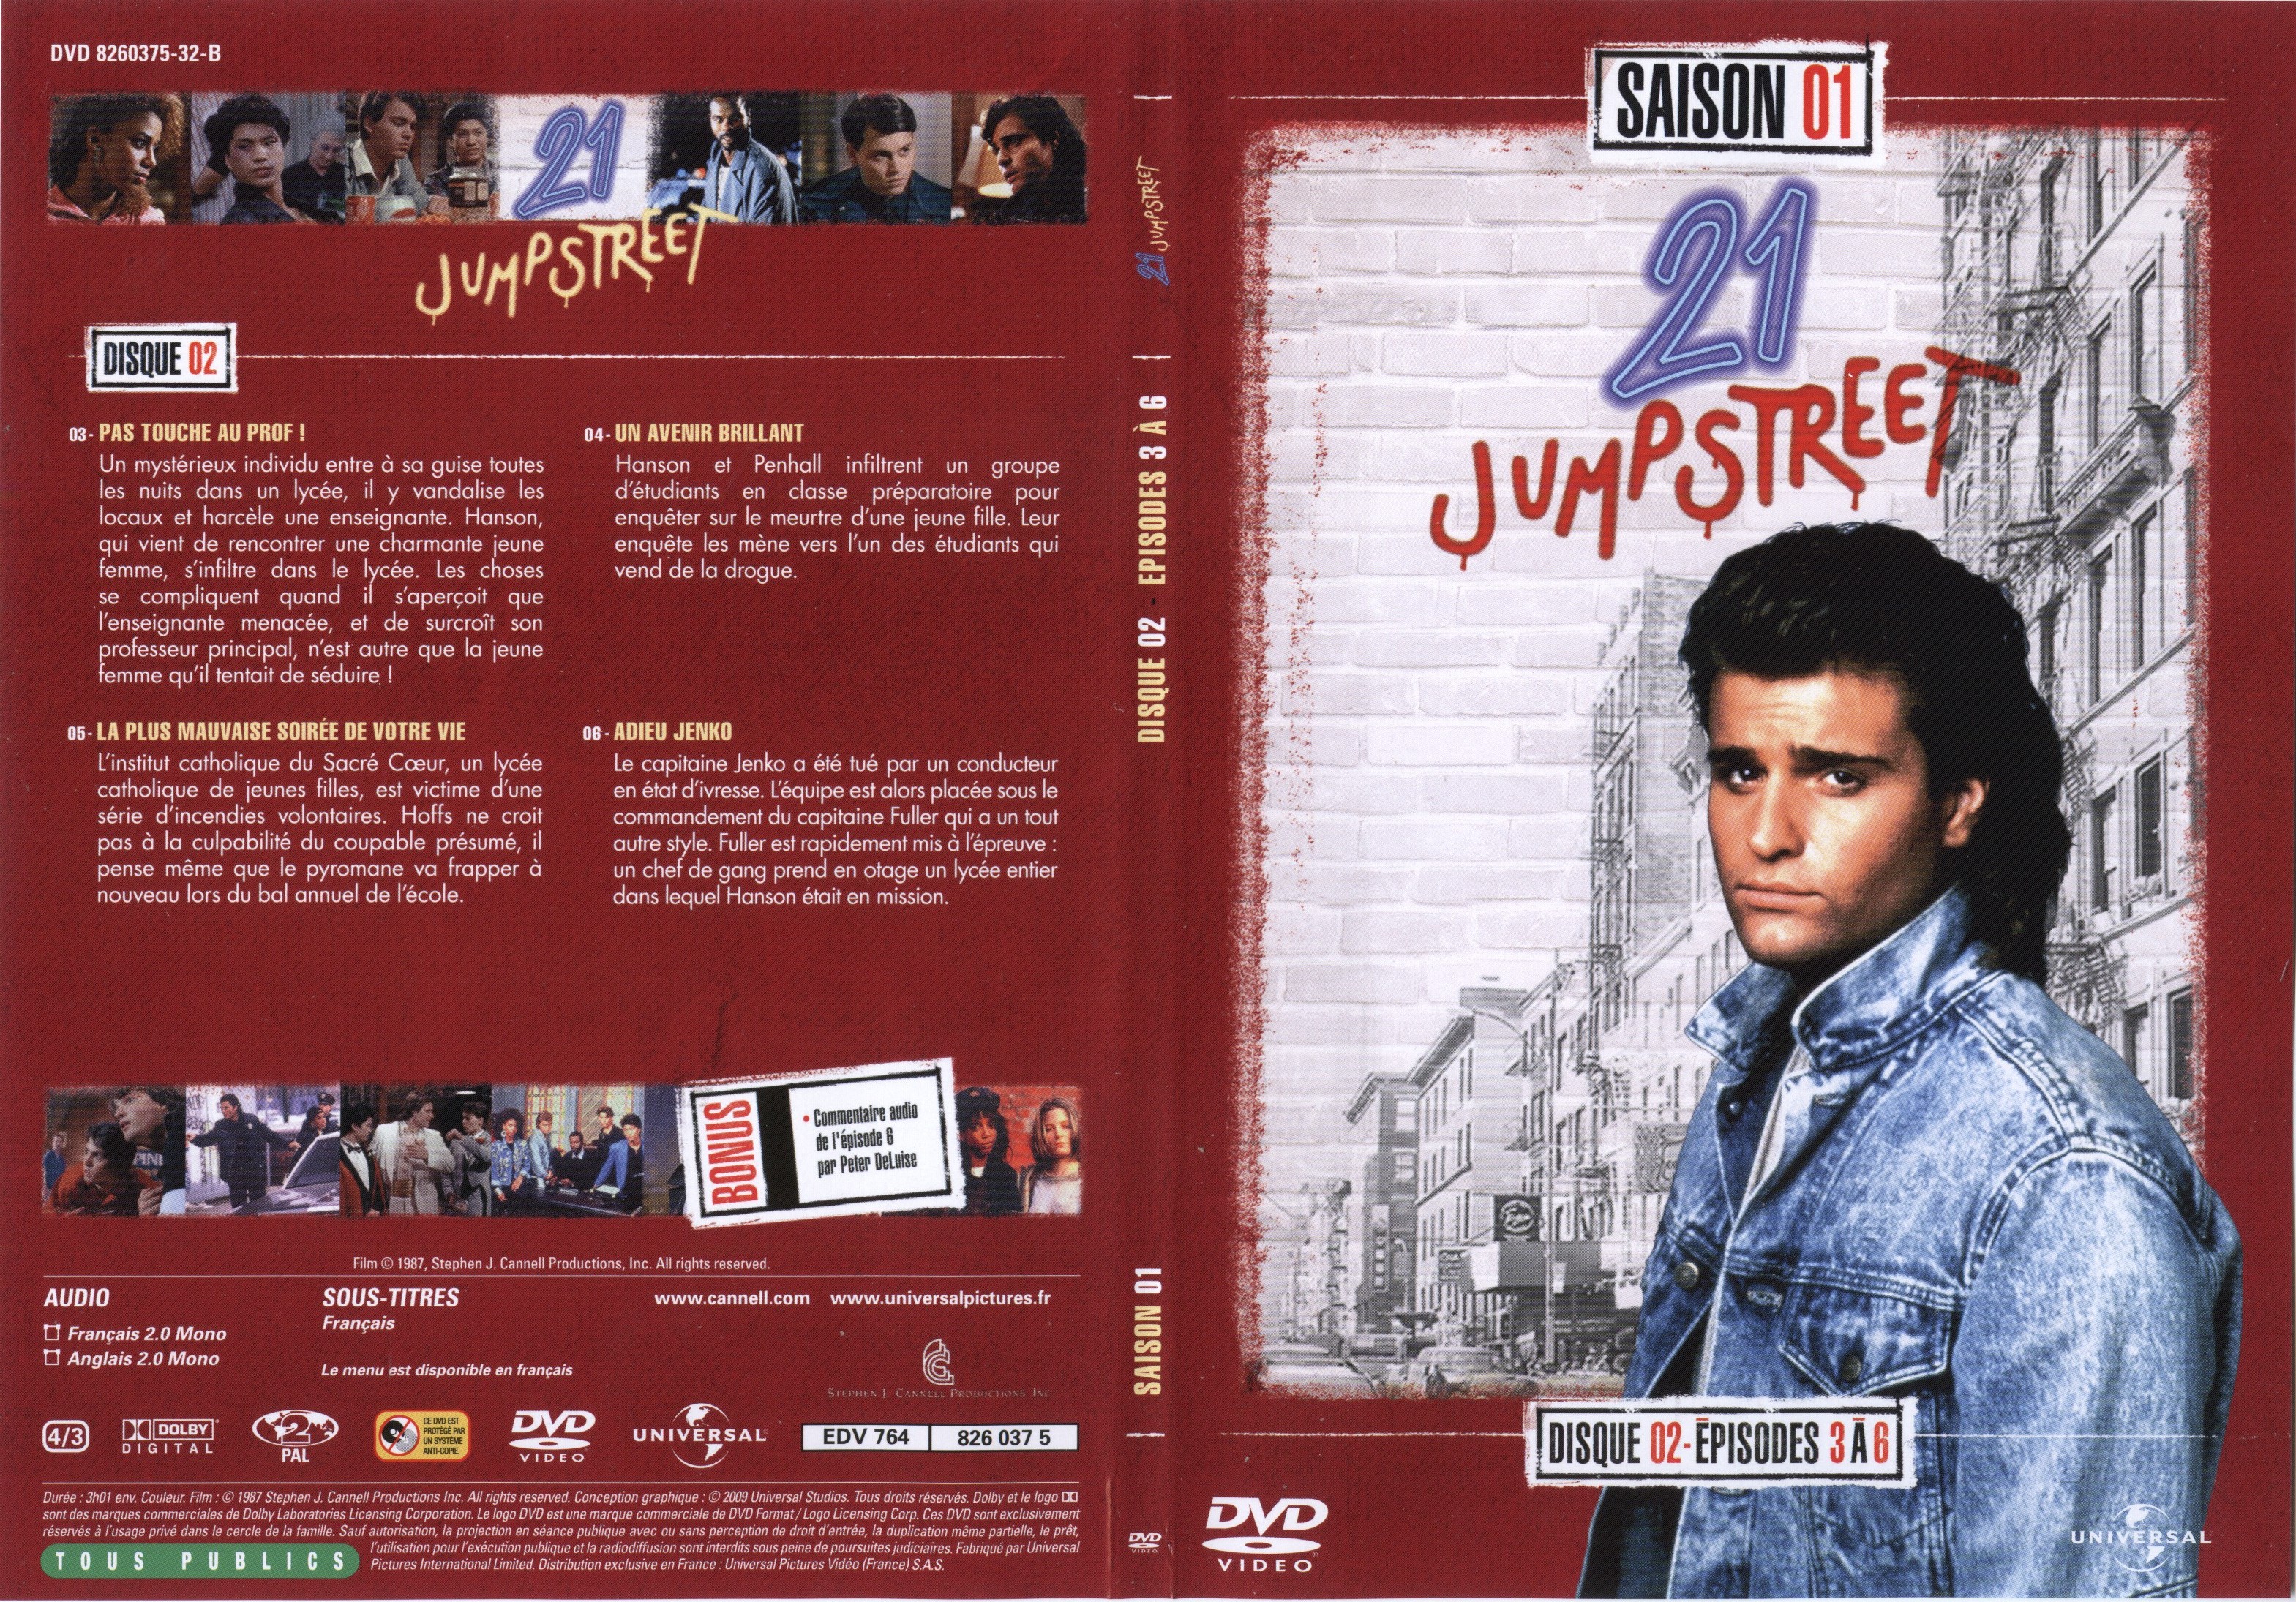 Jaquette DVD 21 jump street Saison 01 DVD 02